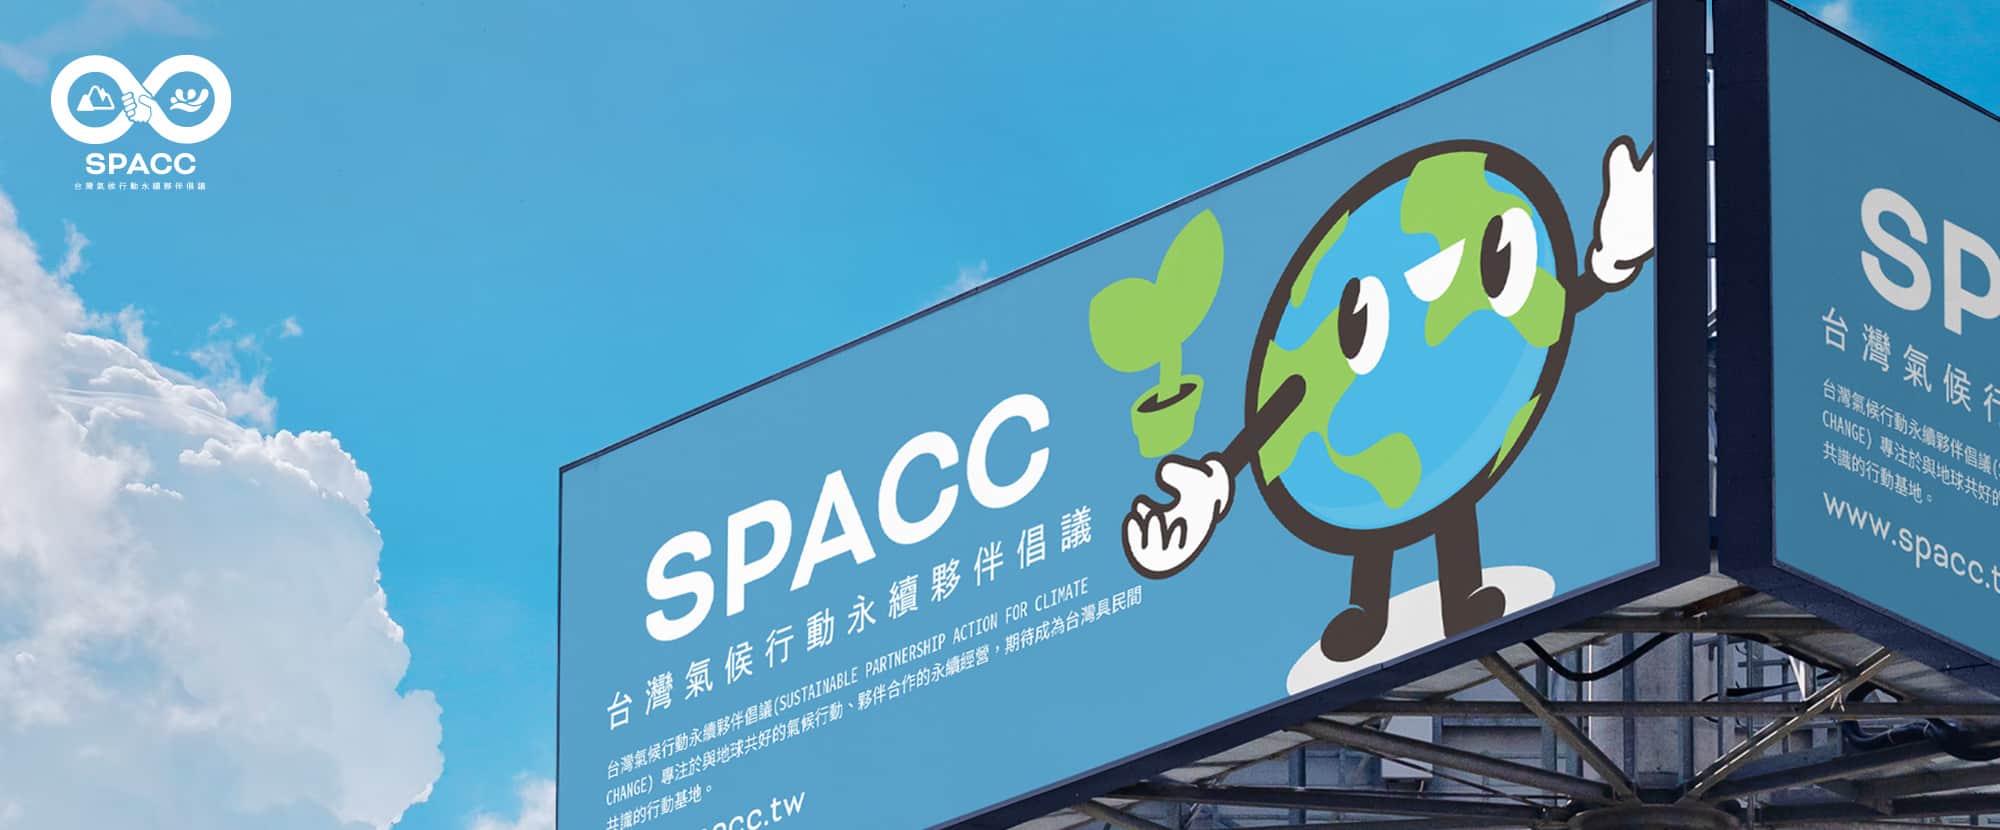 吉祥物設計推薦-SPACC環保倡議